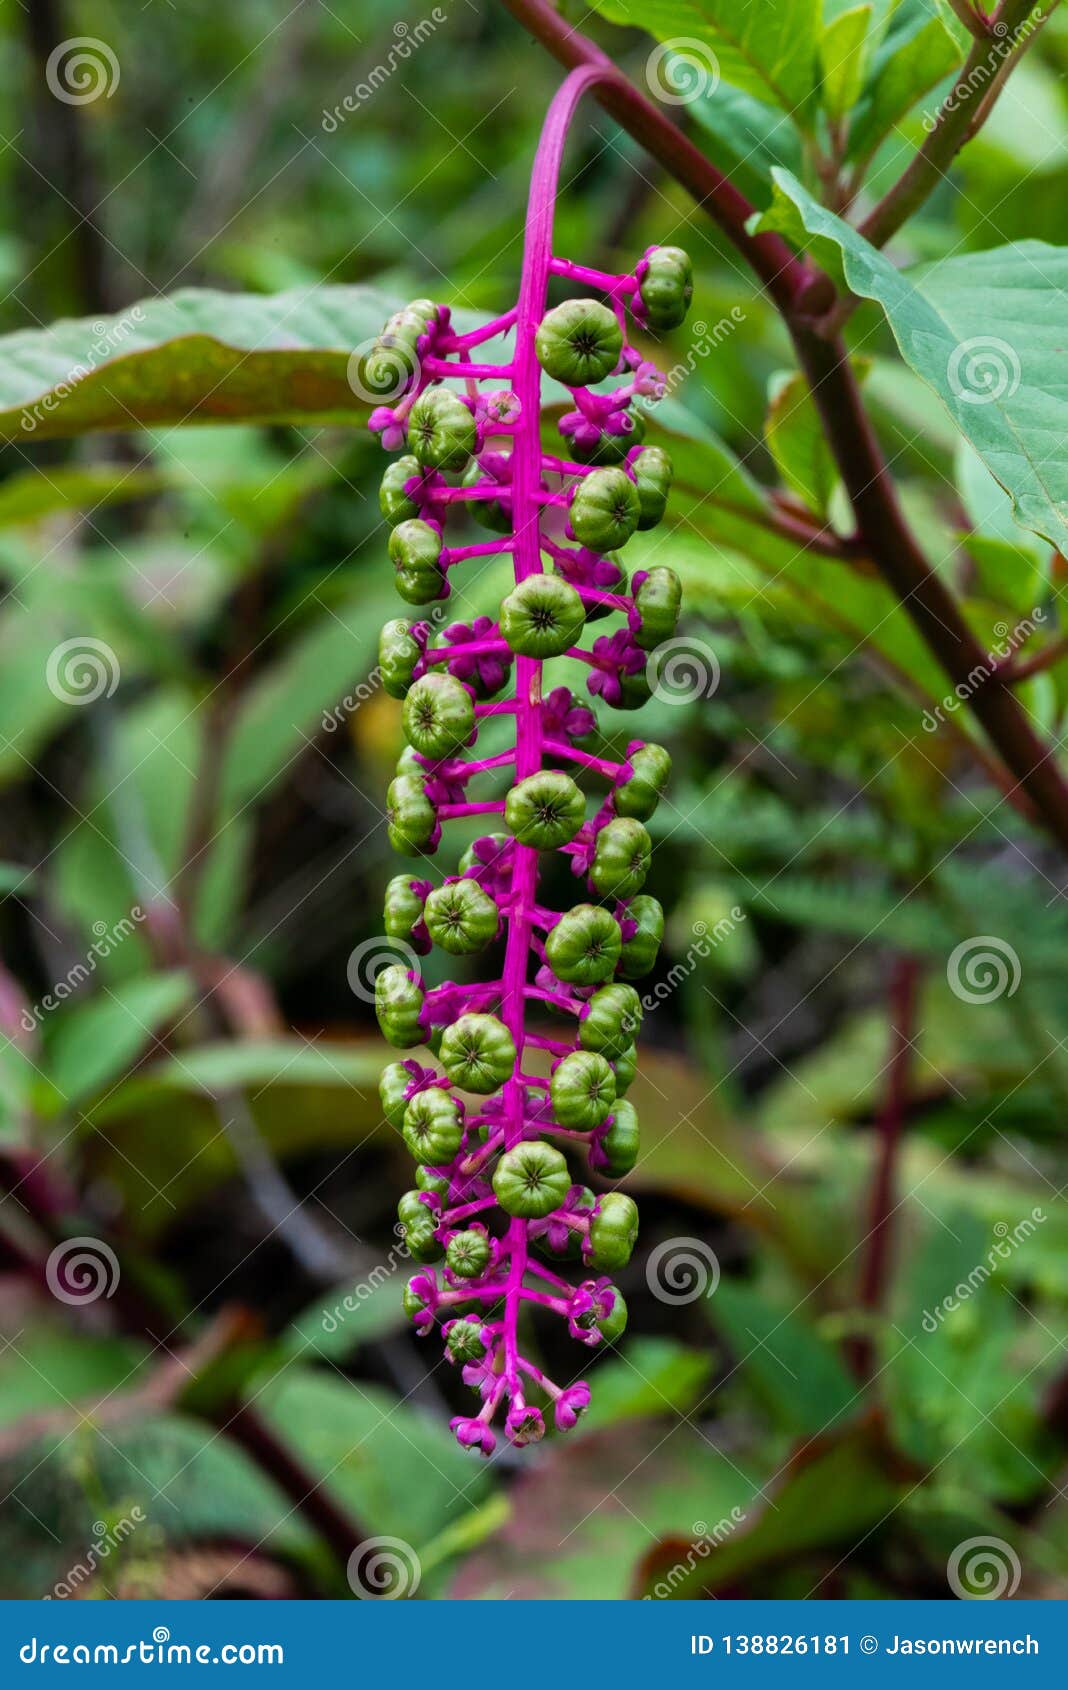 eindringling, Beeren 138826181 - Und Stamm Phytolaccaanlage rosa: Stockbild Grüne Einer Bild Purpurroter von